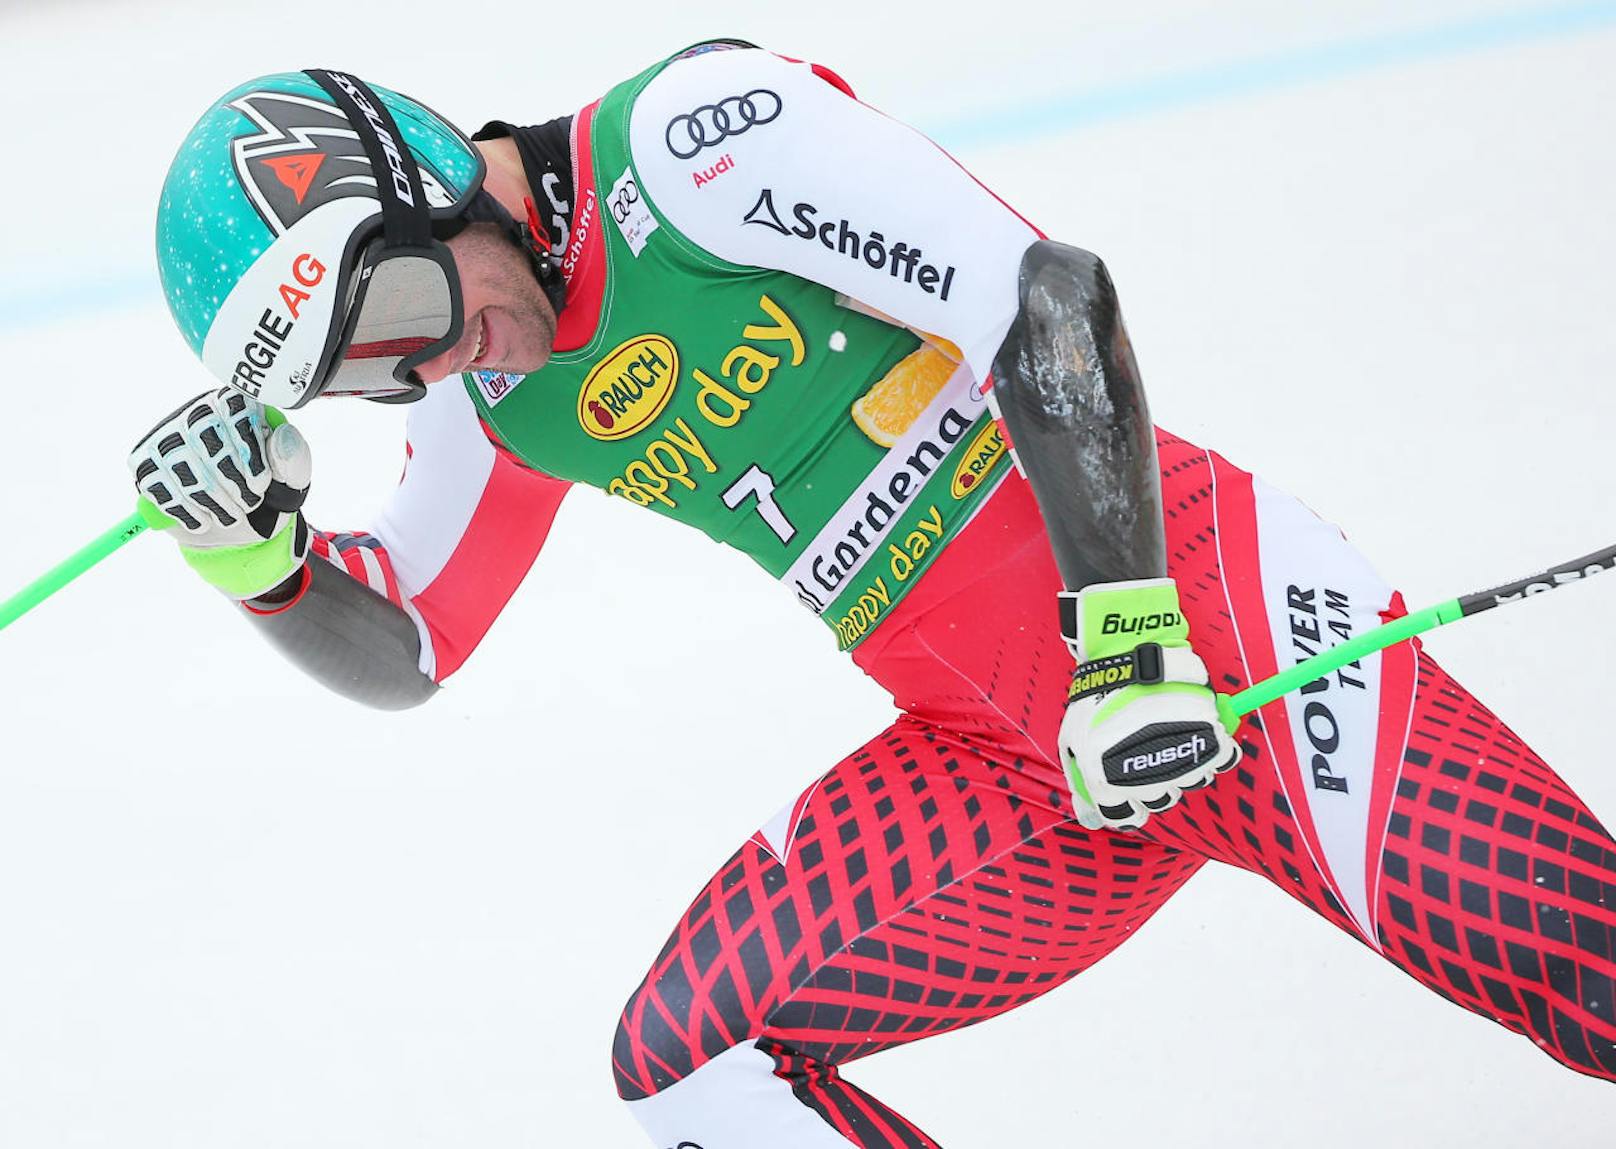 Erster Saisonsieg für Vincent Kriechmayr: Der Super-G von Gröden wird zum Nebelrennen. Der Oberösterreicher behält den Durchblick, siegt vor Kjetil Jansrud (Norwegen) und Thomas Dreßen (Deutschland).